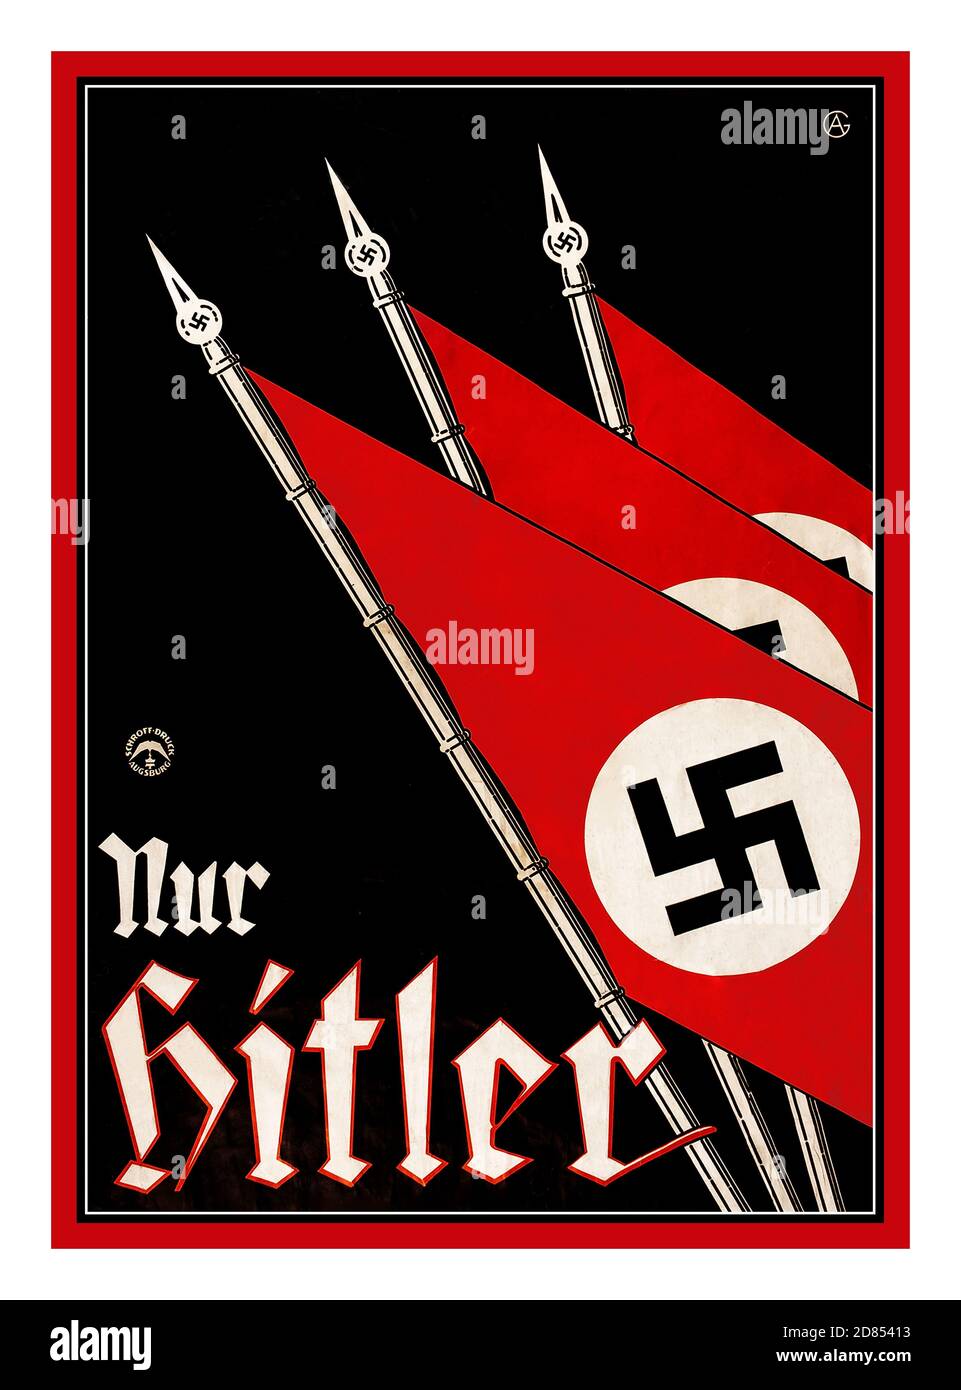 Vintage 1930er Jahre 'nur Hitler' nur HITLER Propaganda Poster Lithograph mit Swastika Flaggen. NSDAP Nazi-Präsidentschaftswahl ca. 1932 Deutschland. Die NSDAP wurde in den 1920er Jahren gegründet. Die Ideologie beruhte auf deutschem Nationalismus und Antisemitismus. 1921 wurde Adolf Hitler der Führer der NSDAP, eine Position, die ihn später zum Diktator des Deutschen Dritten Reichs führen würde. Die populistische Propagandasymbolik der NSDAP hielt sich im Kopf der deutschen Wähler. Stockfoto